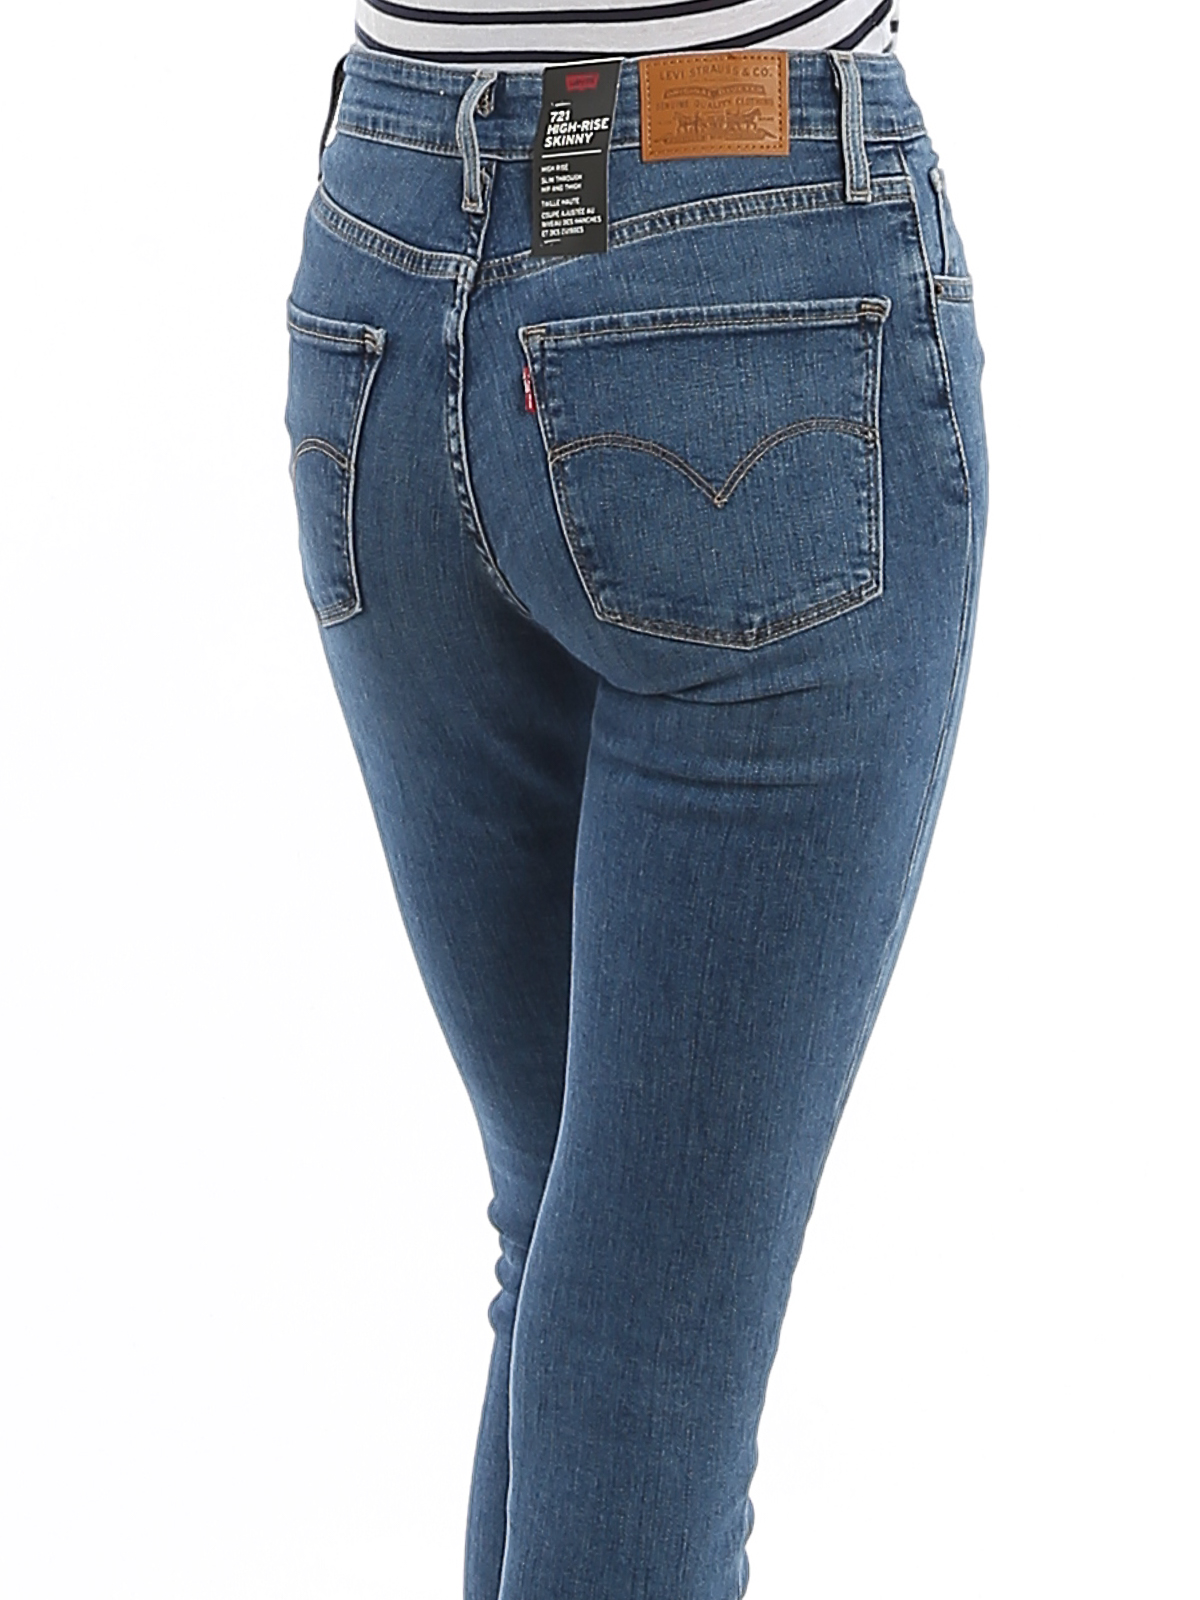 jeans shop online